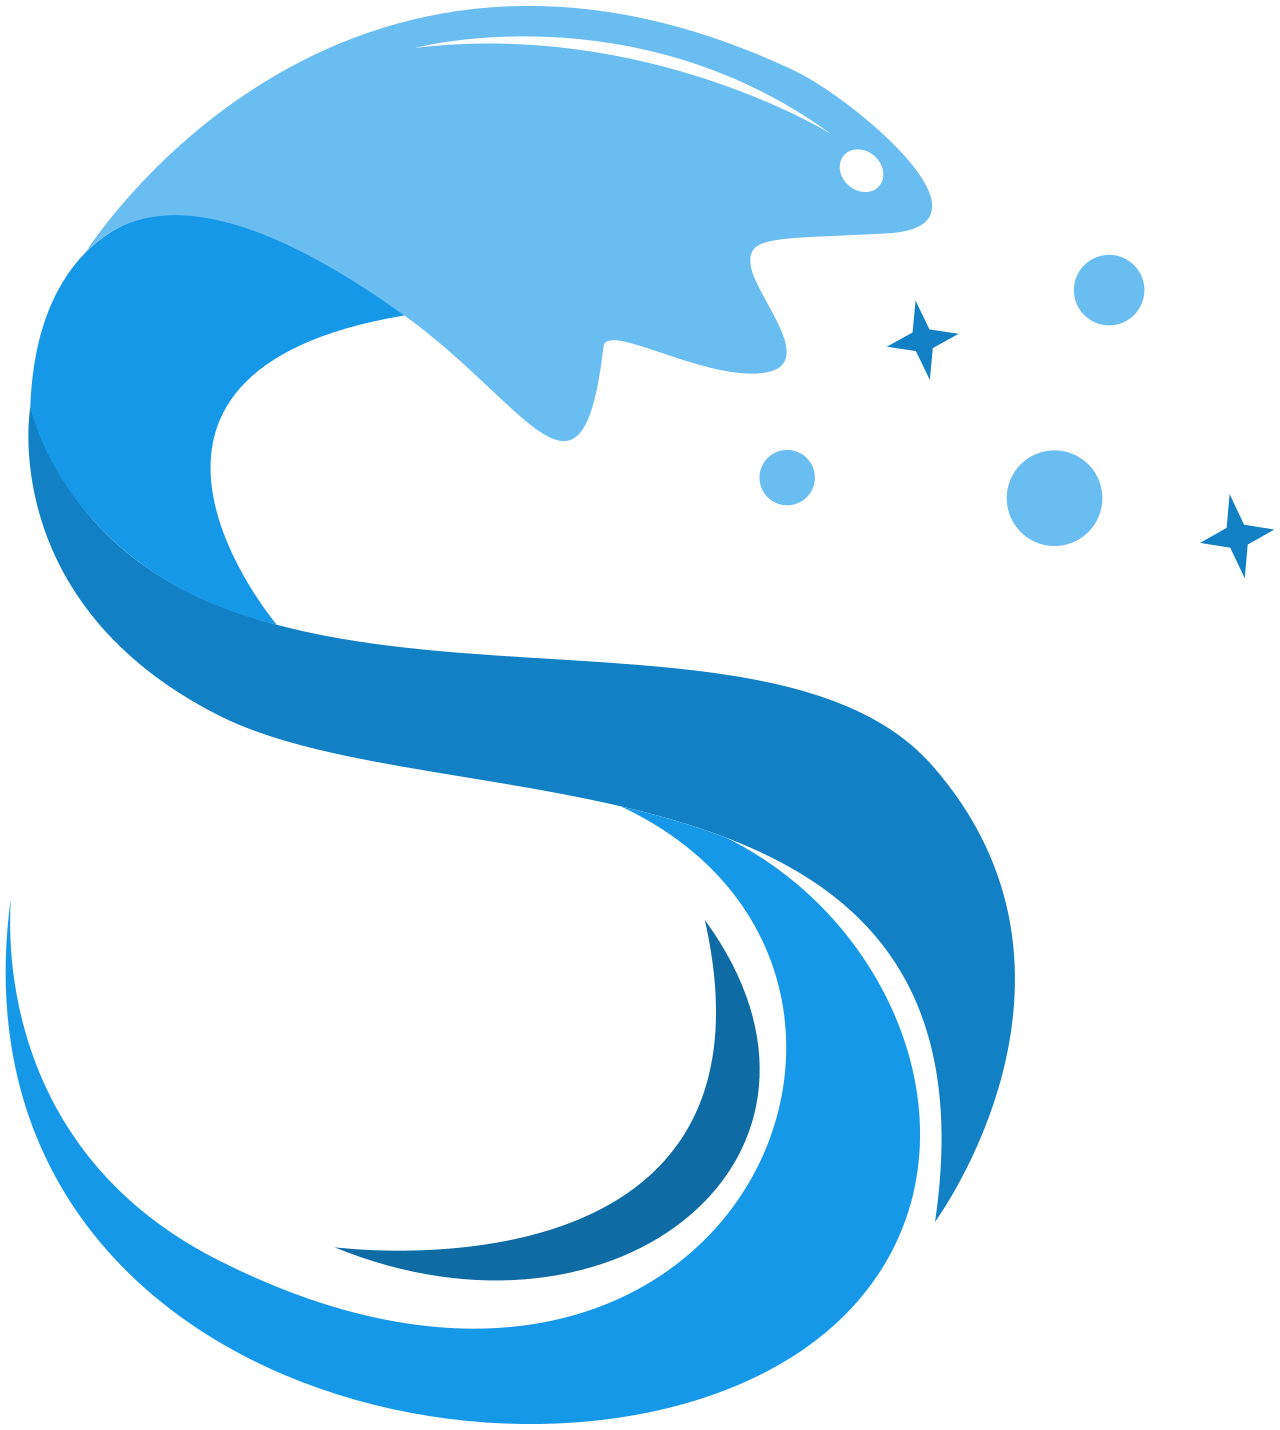 Solis Pools & Spas LLC's logo